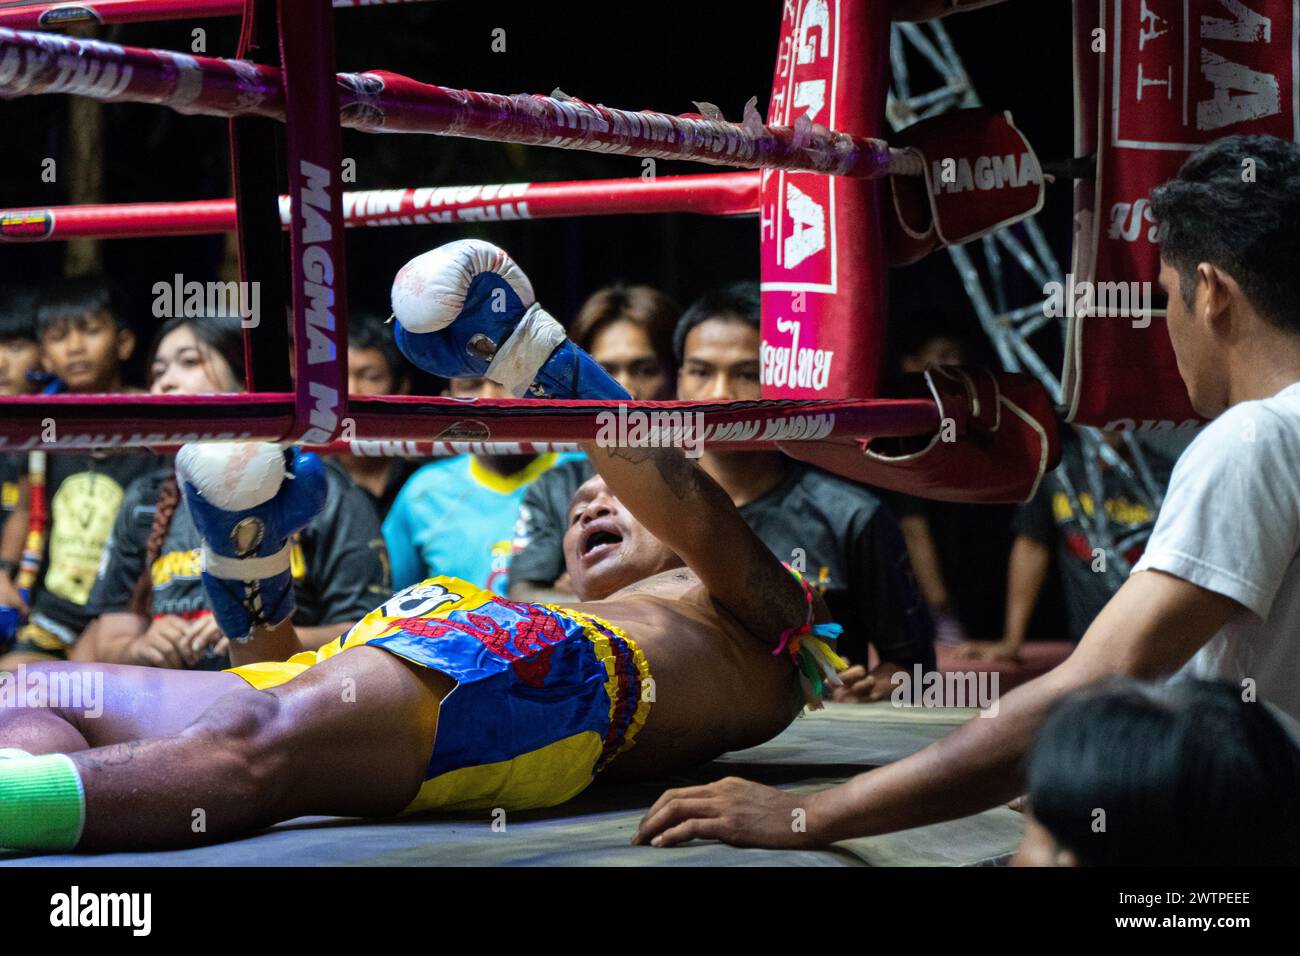 Il pugile tailandese Petch si nel, al centro, viene visto mentre tenta di sollevarsi dopo essere stato messo fuori combattimento, circondato dal pubblico, durante i combattimenti Muay Thai, sull'isola di Koh Chang, Thailandia. Foto Stock